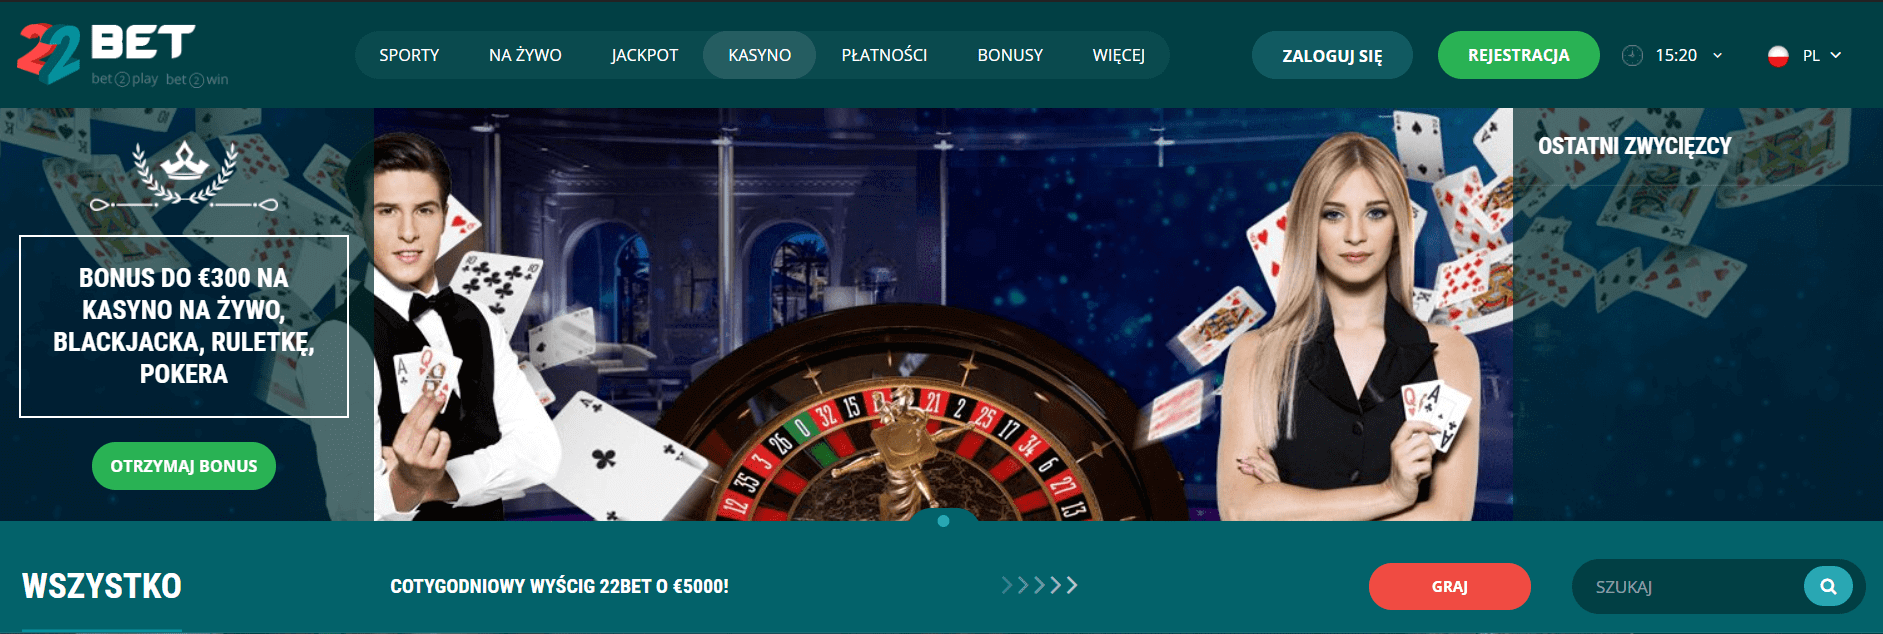 22bet bonusy casino screenshot